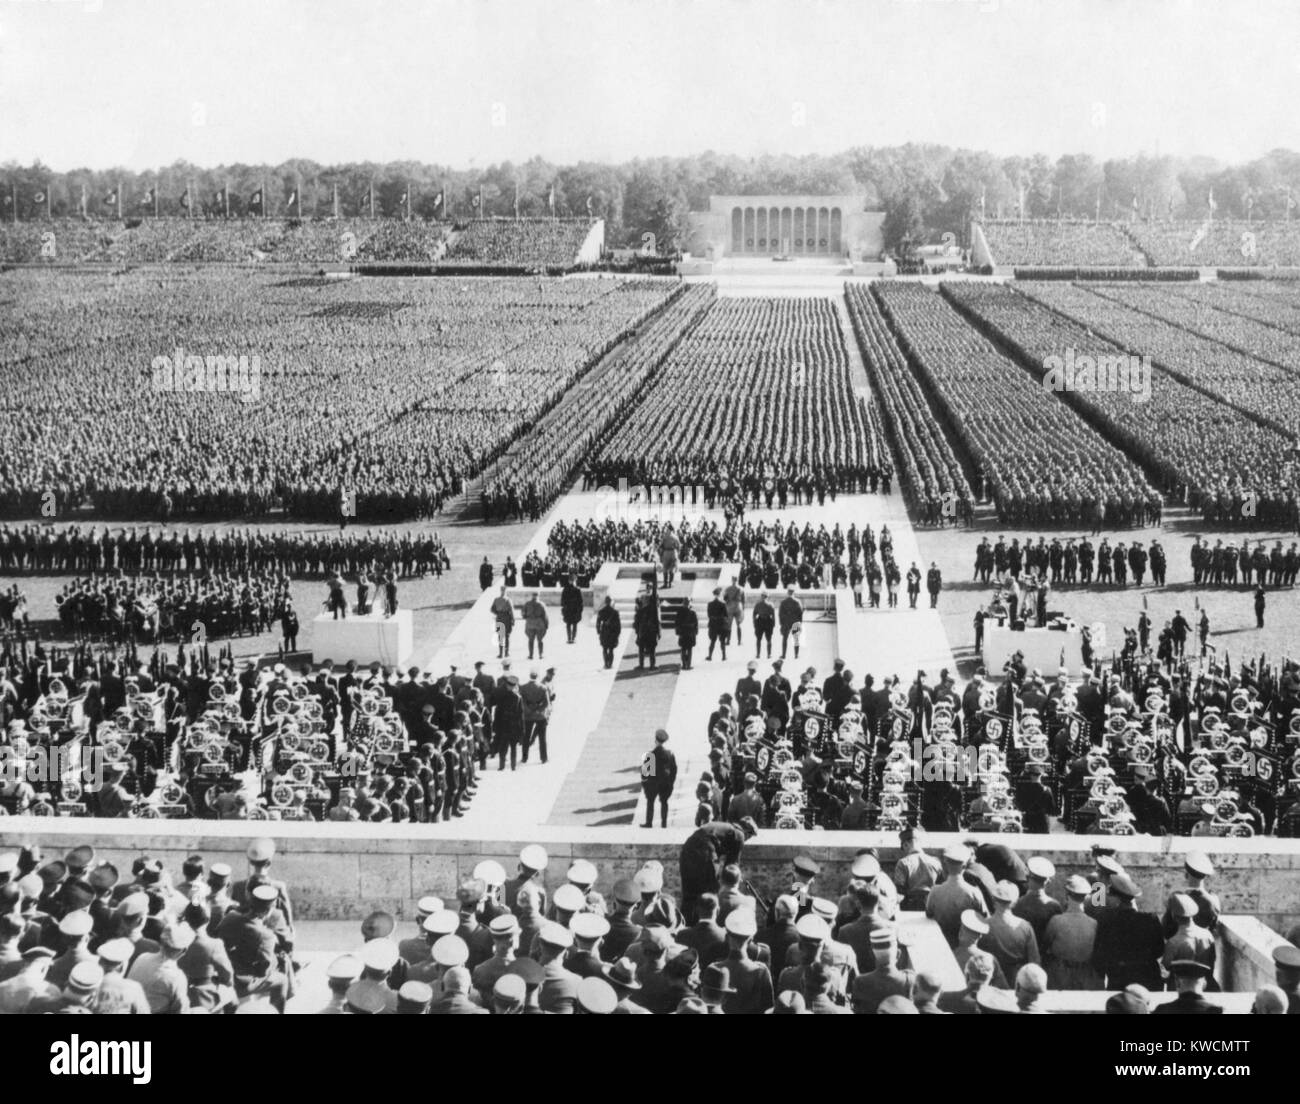 Schiera di Nazi esercito tedesco riempire campo Zeppelin a Norimberga. Esse sono rivolte da parte di Hitler da un podio (centro) durante il partito nazista congresso, Sett. 8, 1938. - (BSLOC 2014 14 10) Foto Stock